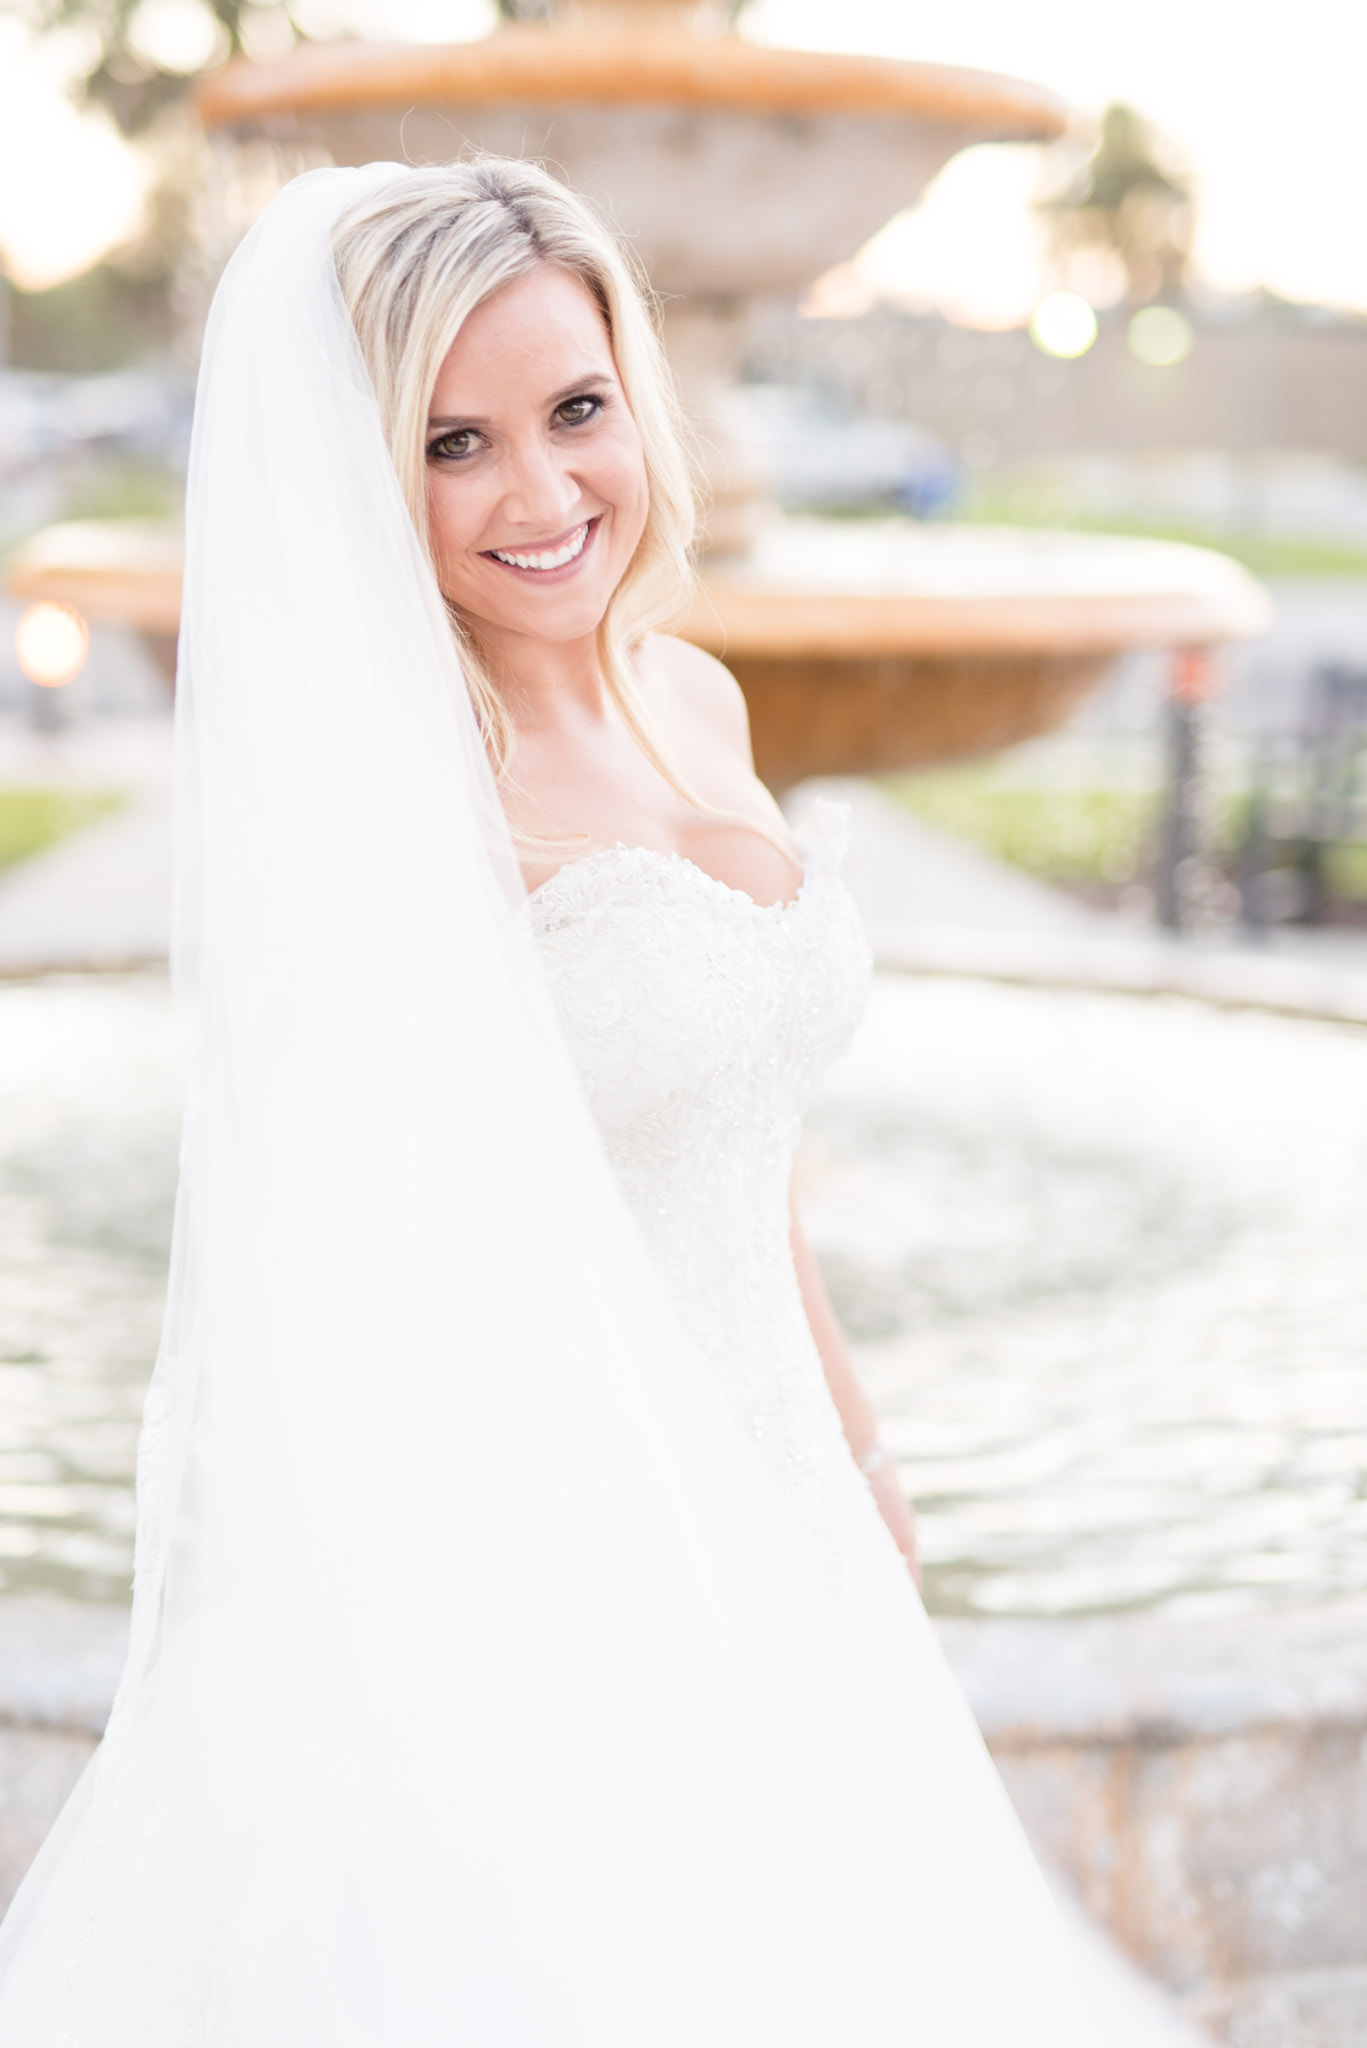 Bride smiles as veil blows in wind.